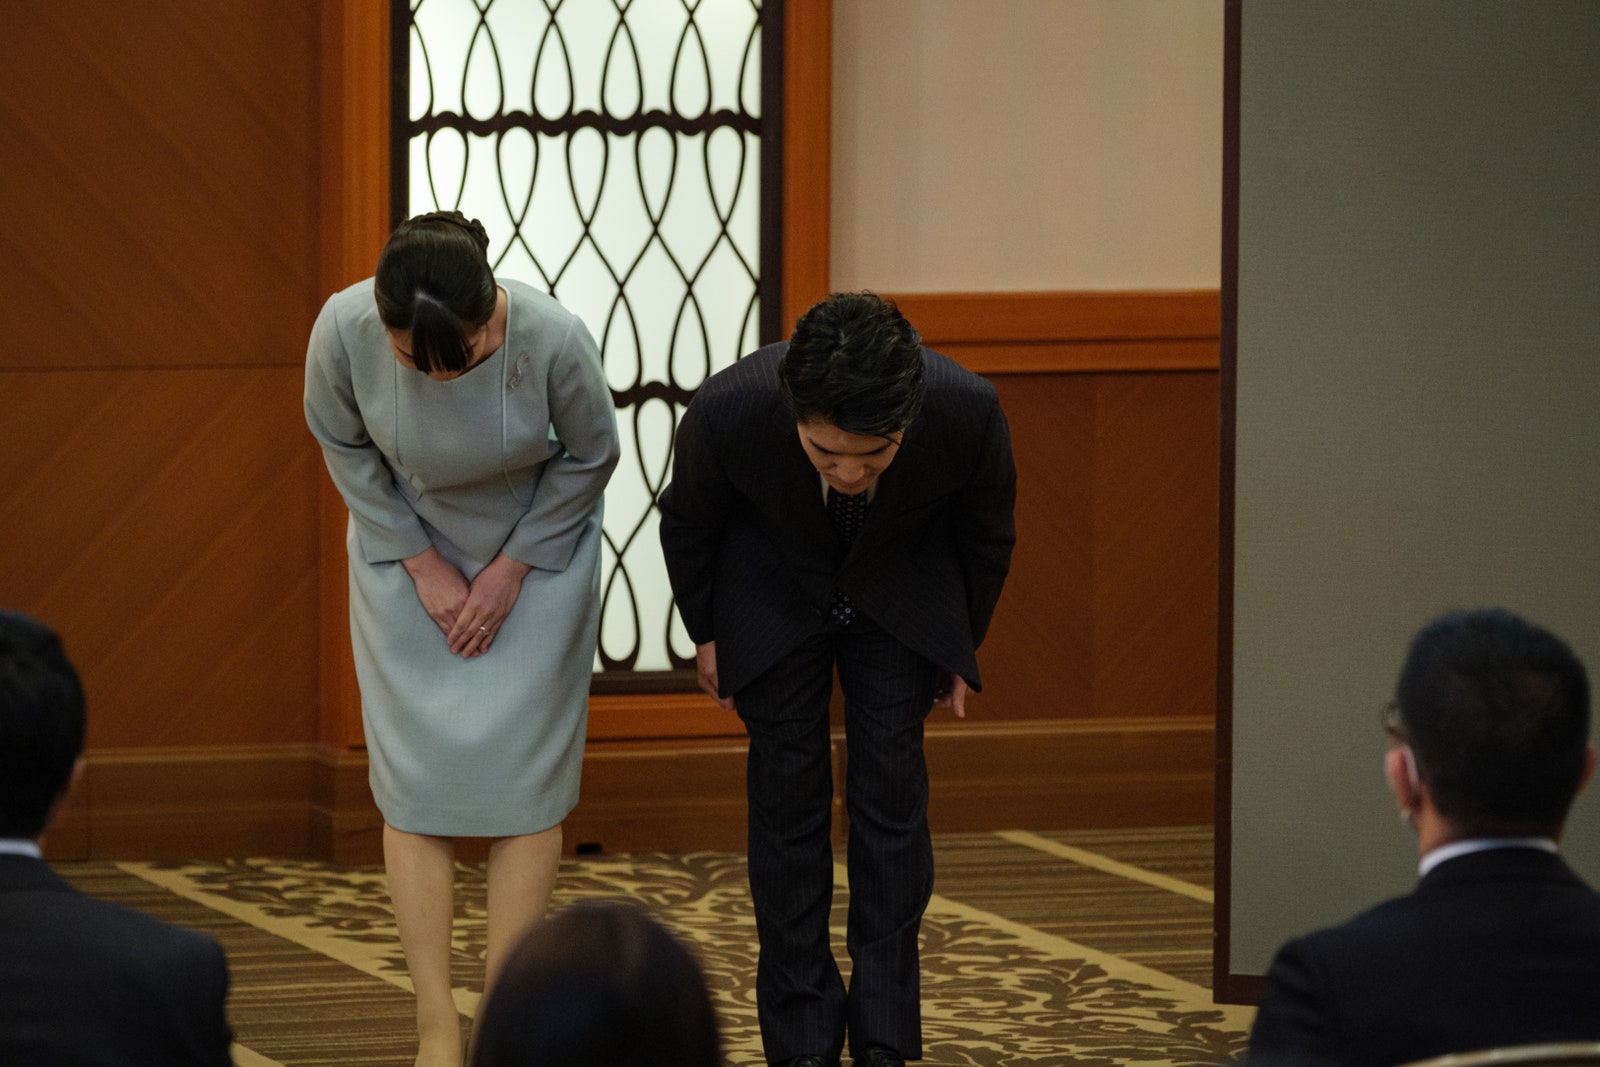 Японская принцесса Мако вышла замуж — и отказалась от титула